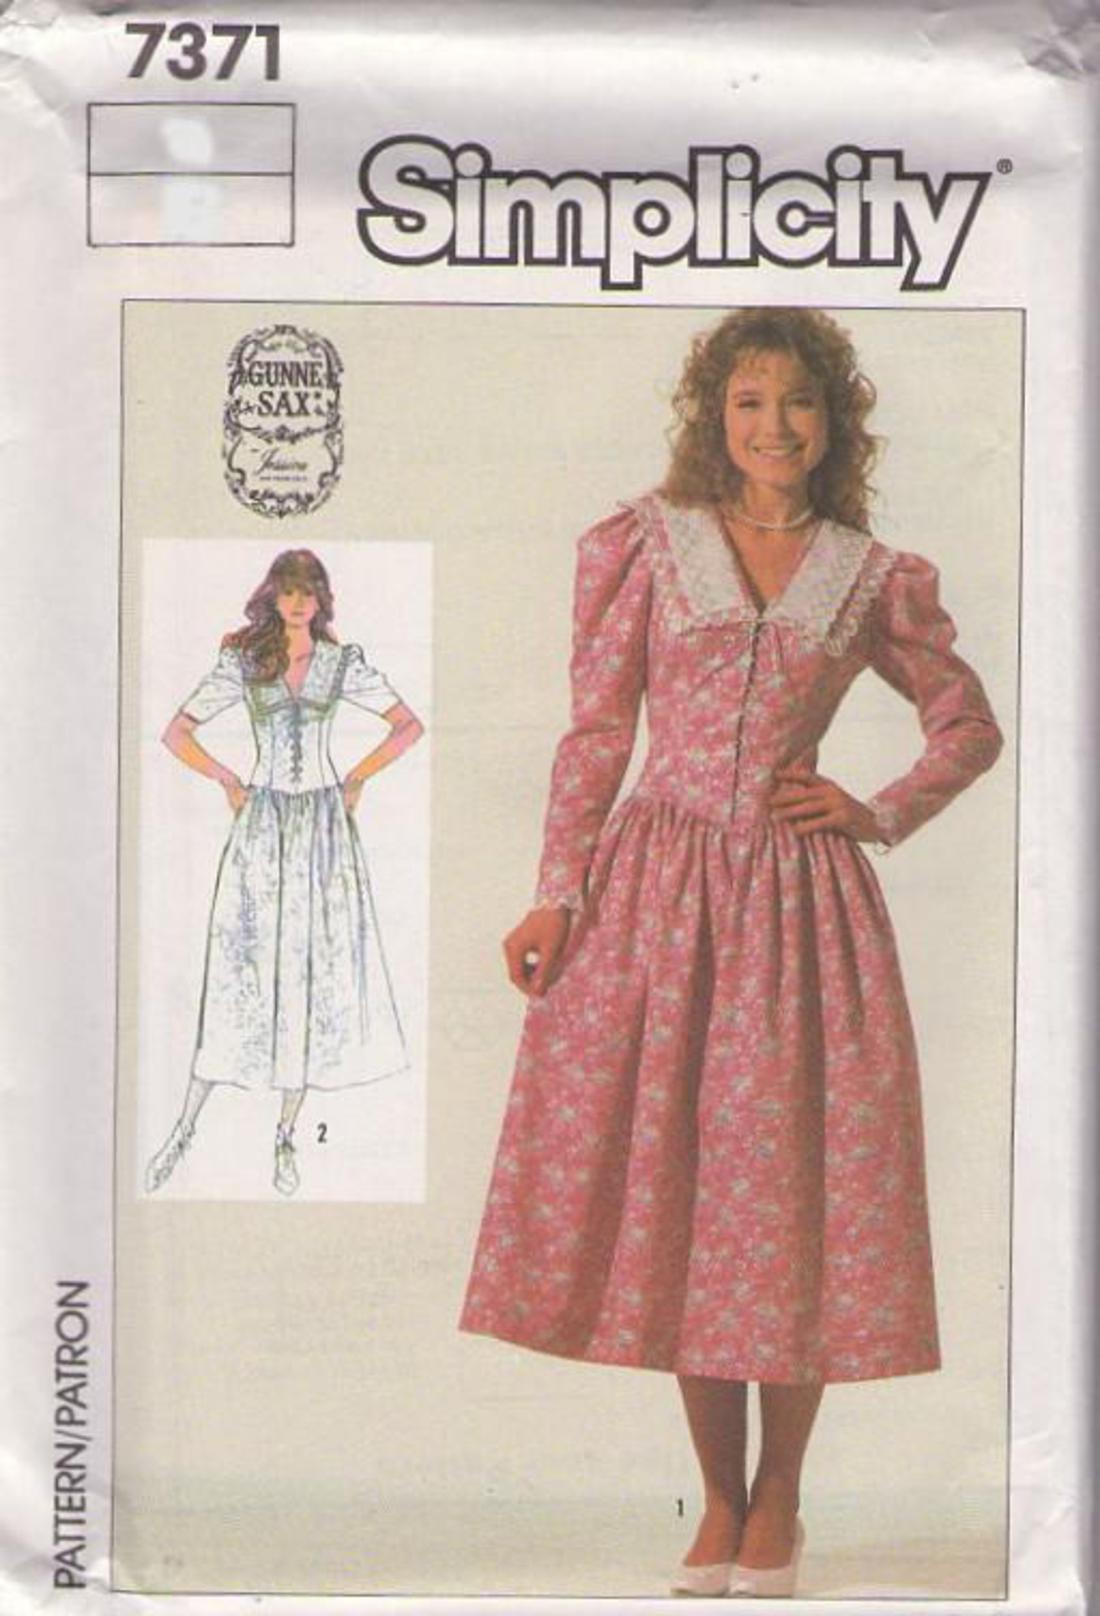 gunne sax dresses 1985